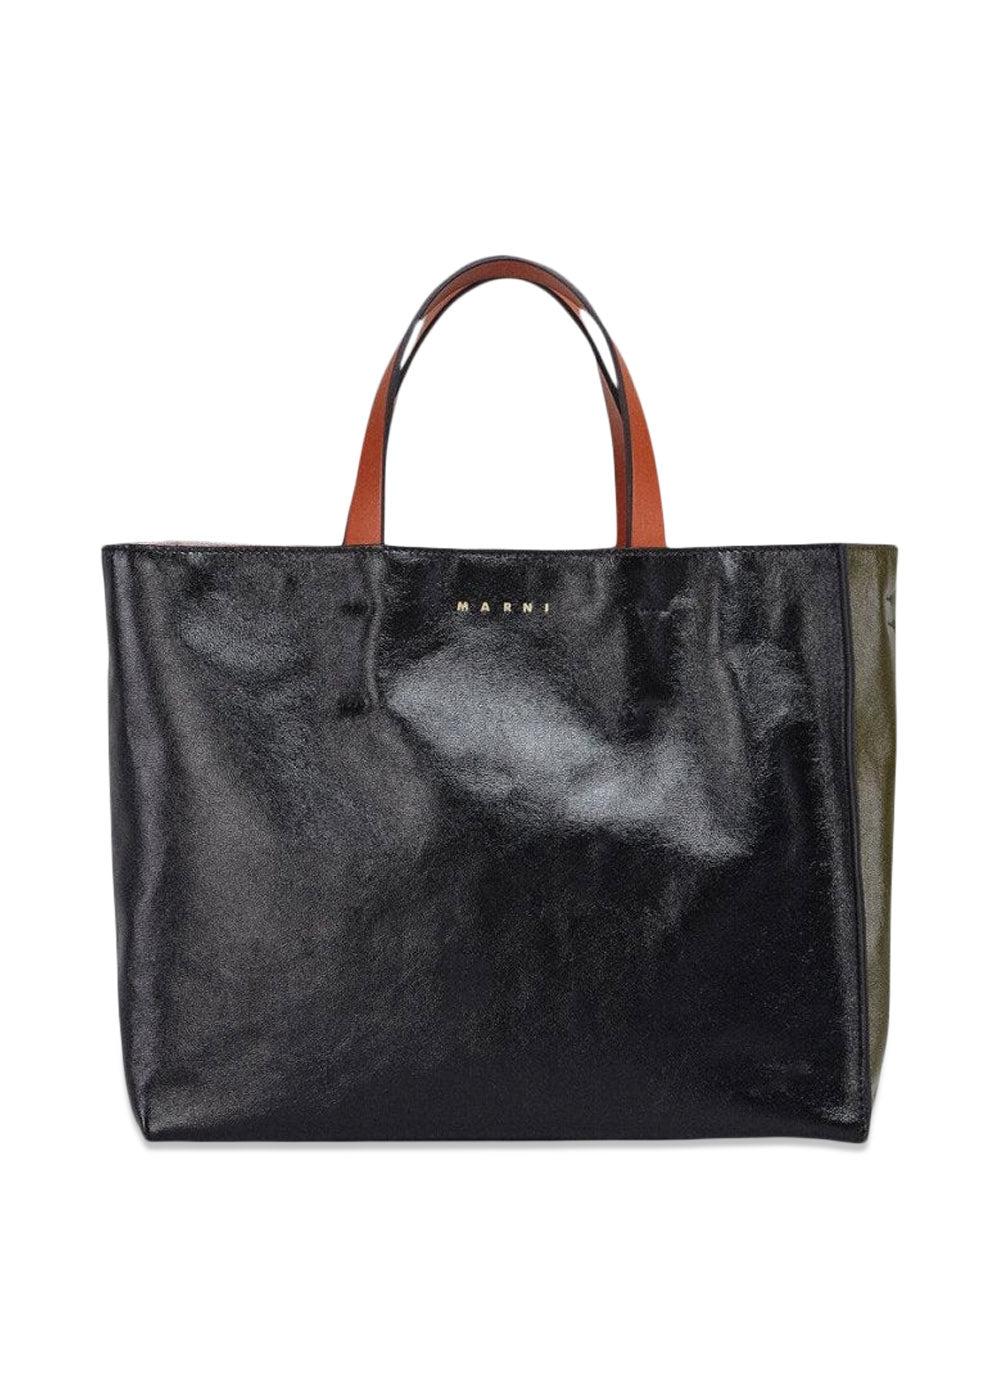 Marnis SHOPPING BAG - Black/Mosstone/Tile. Køb designertasker||skuldertasker her.